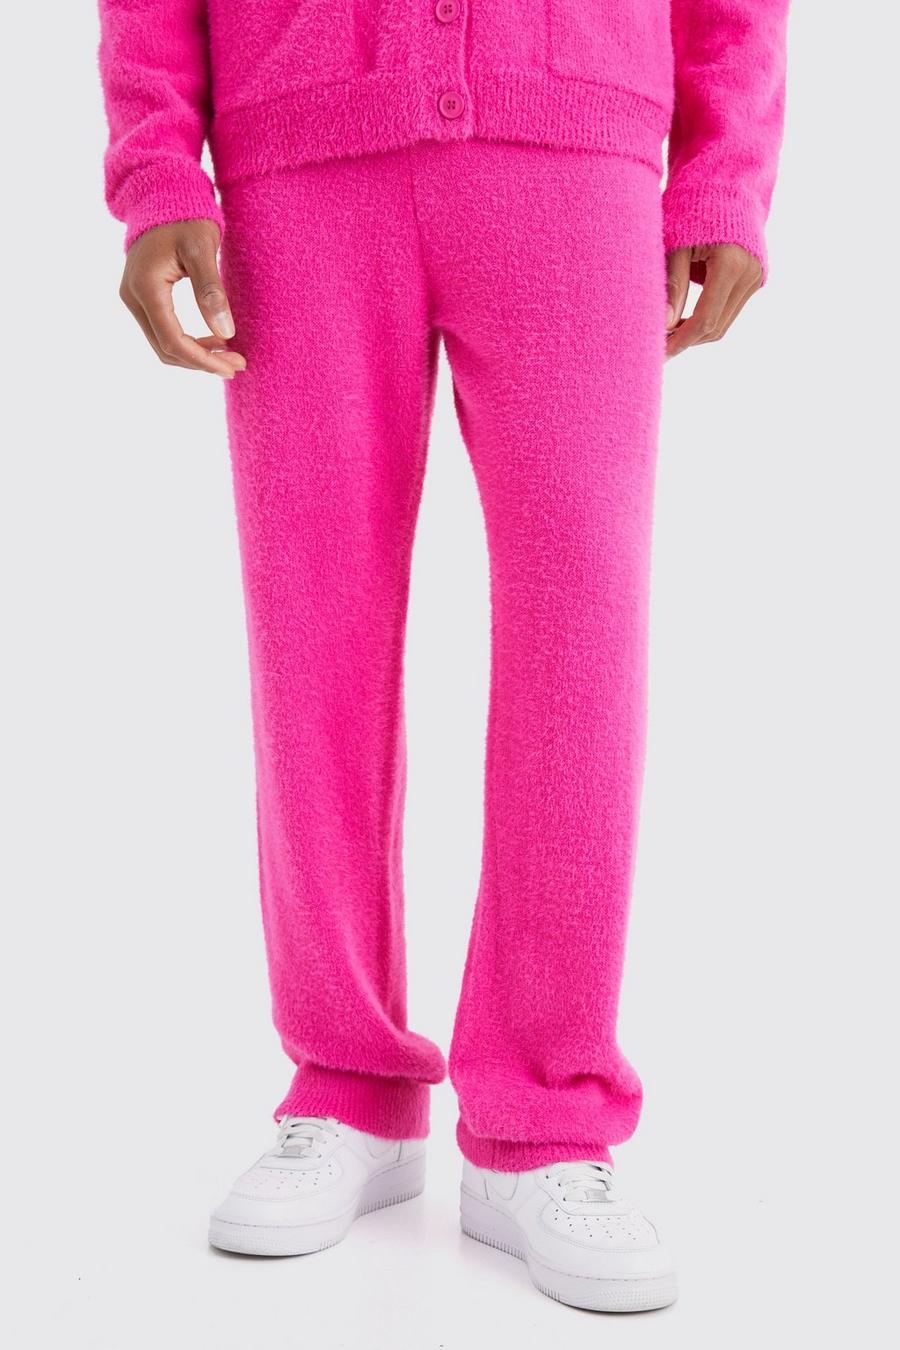 Pantalón deportivo holgado de punto suave, Hot pink